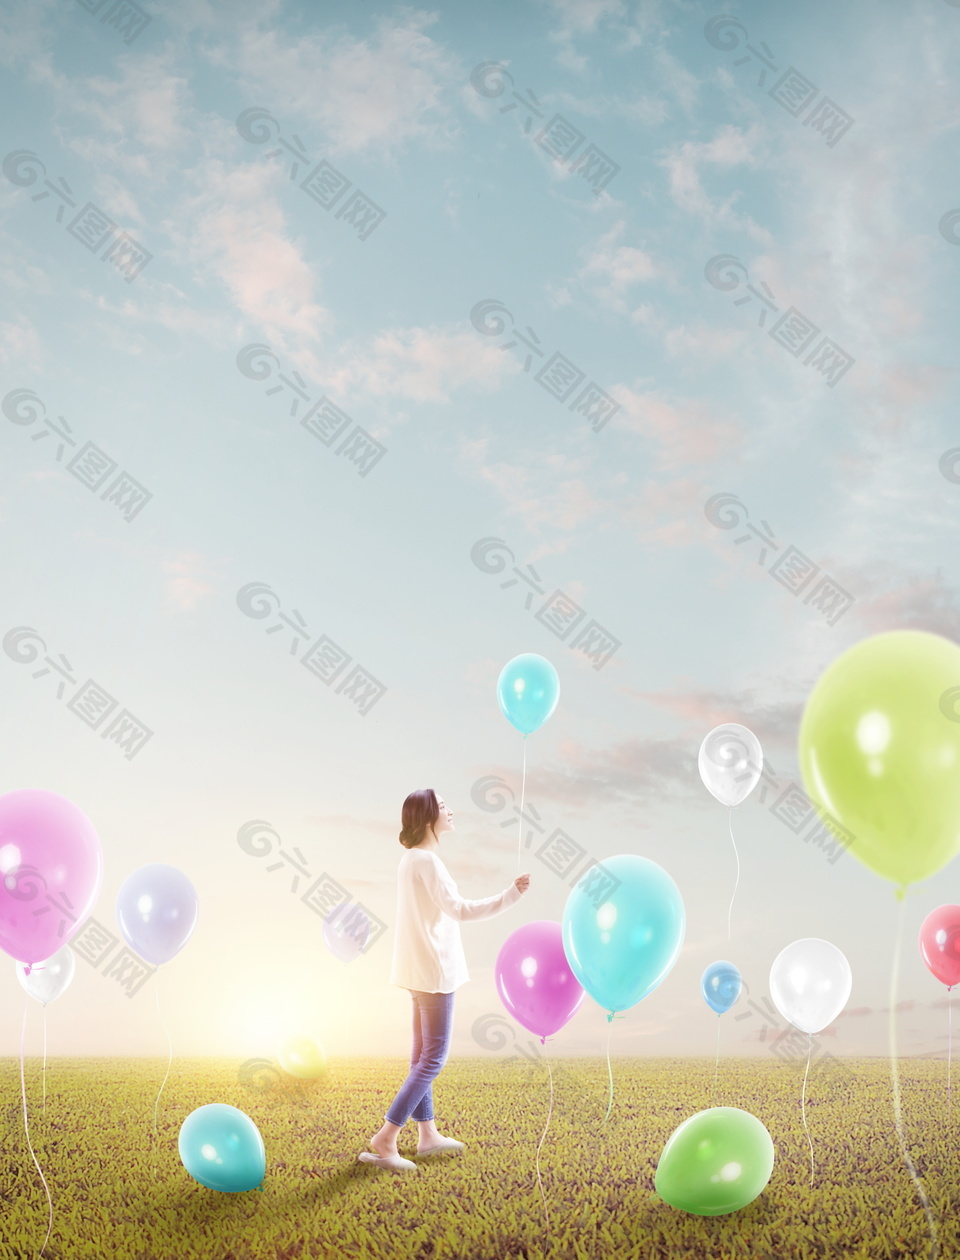 简约草地上的五彩气球人物背景设计